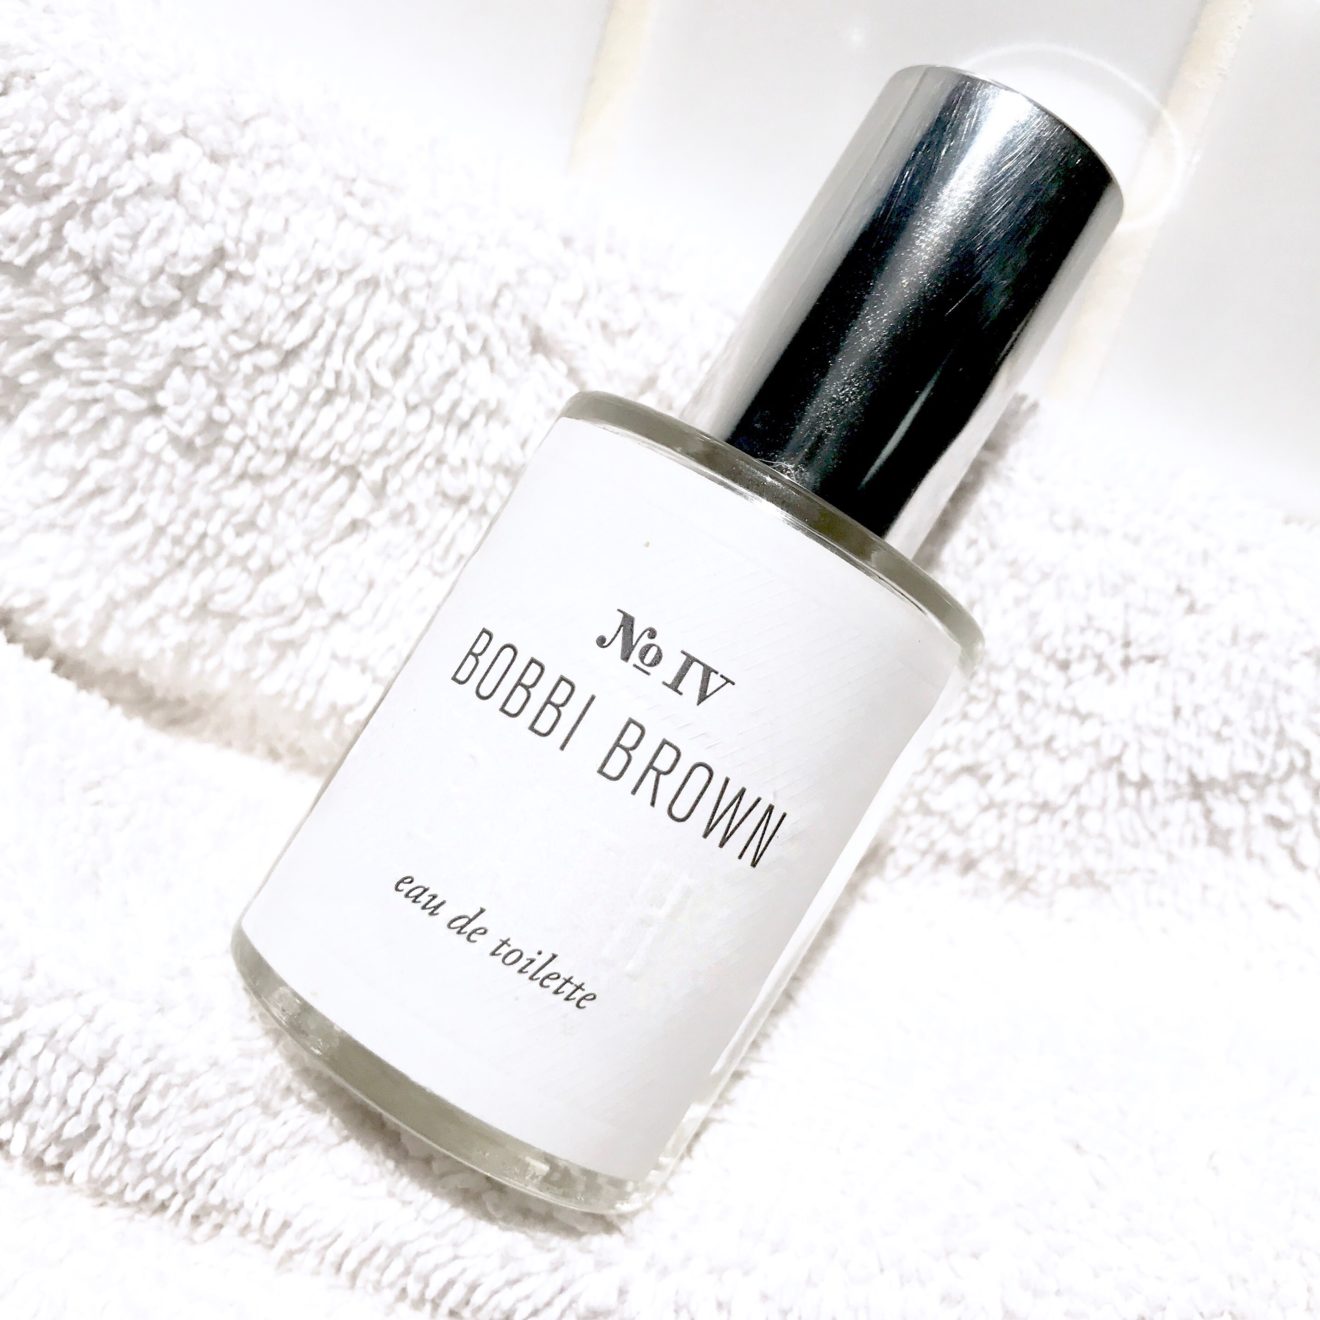 Bobbi Brown Bath Perfume – Good Clean Fun